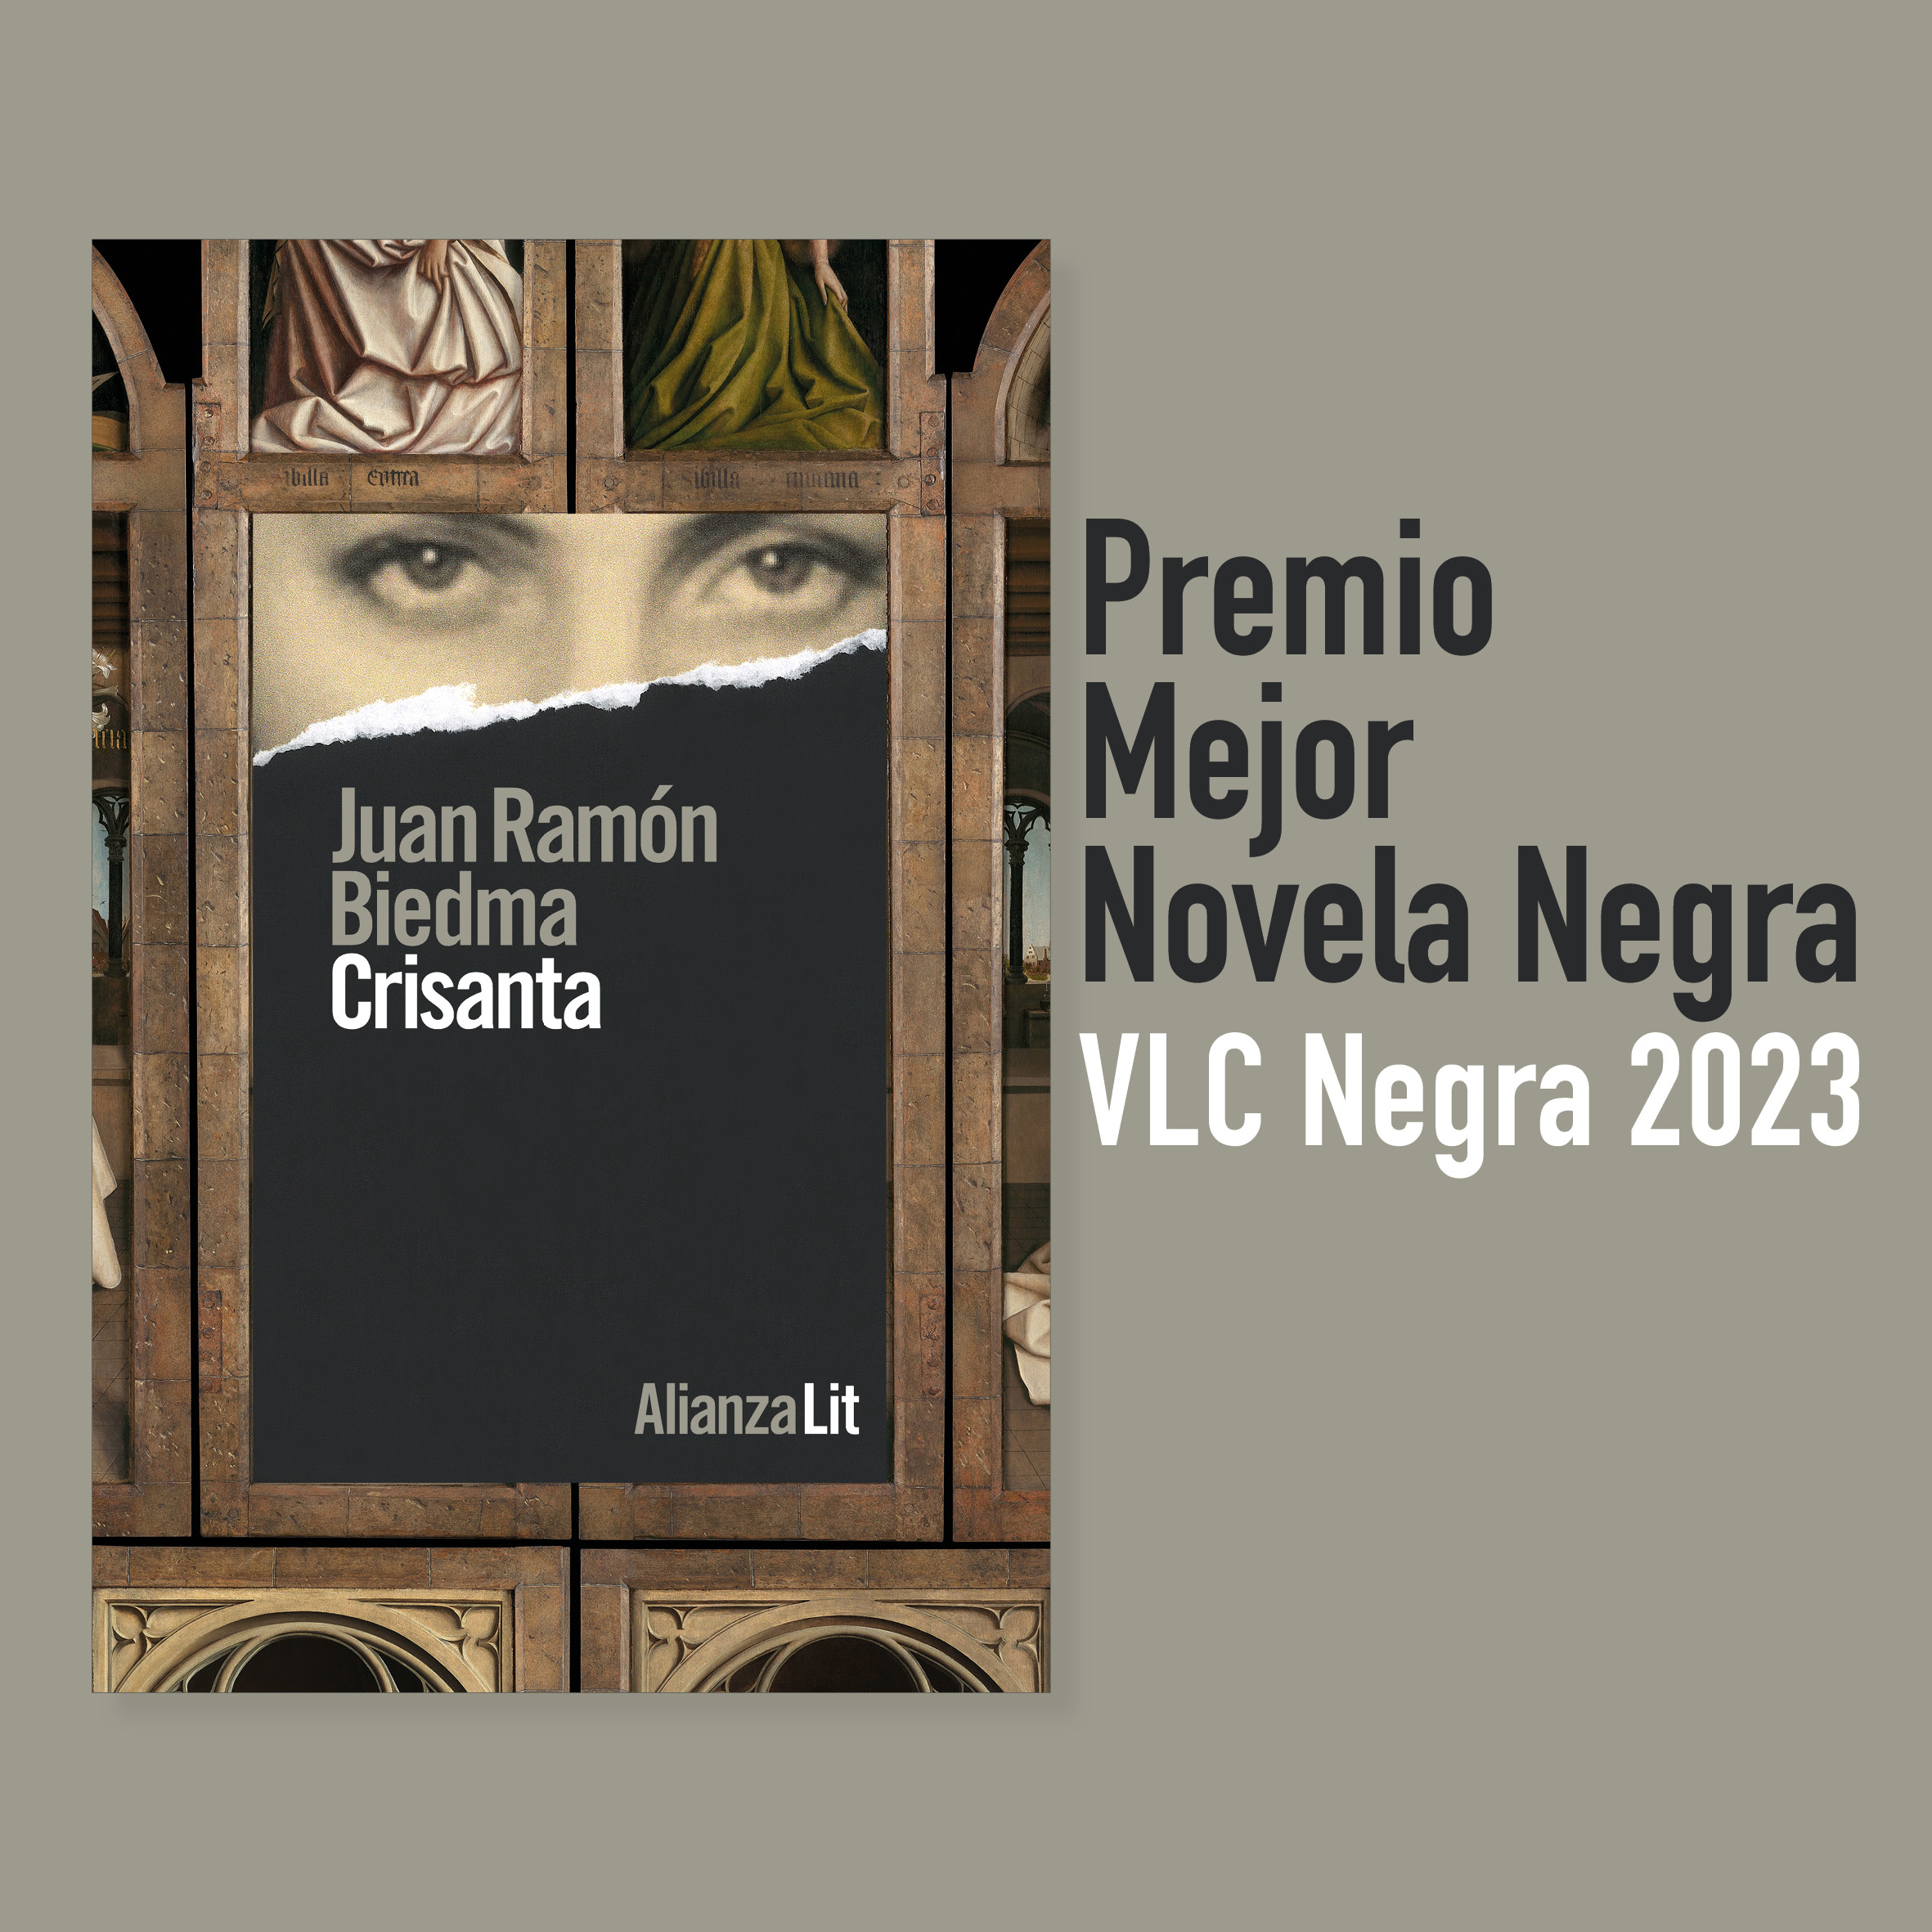 Crisanta, de Juan Ramón Biedma, gana el premio a la Mejor Novela Negra del Festival Valencia Negra